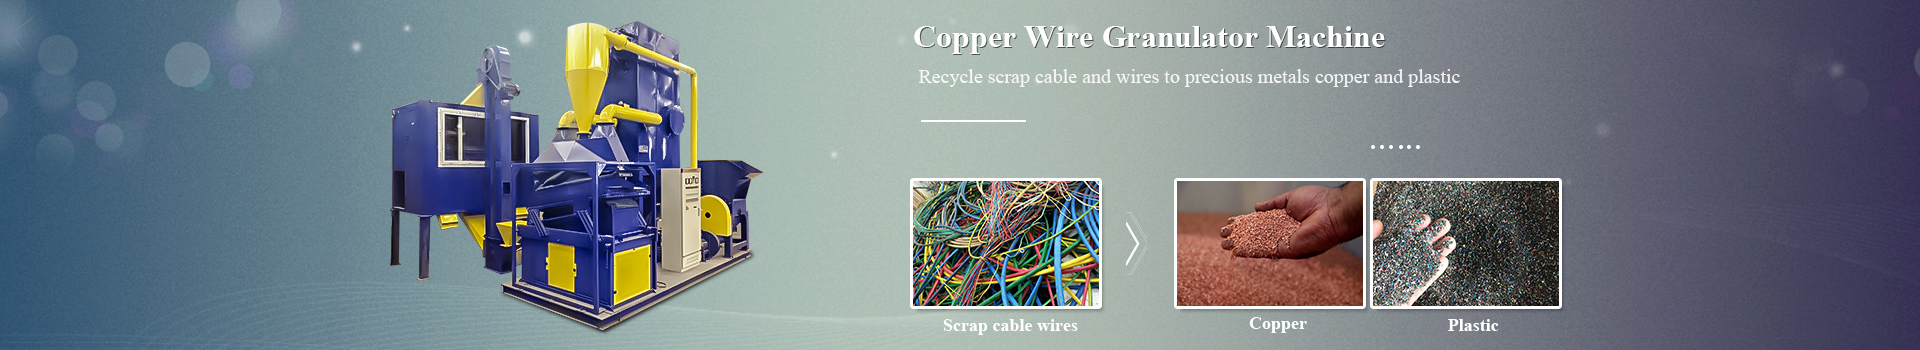 Copper Wire Granulator Machine